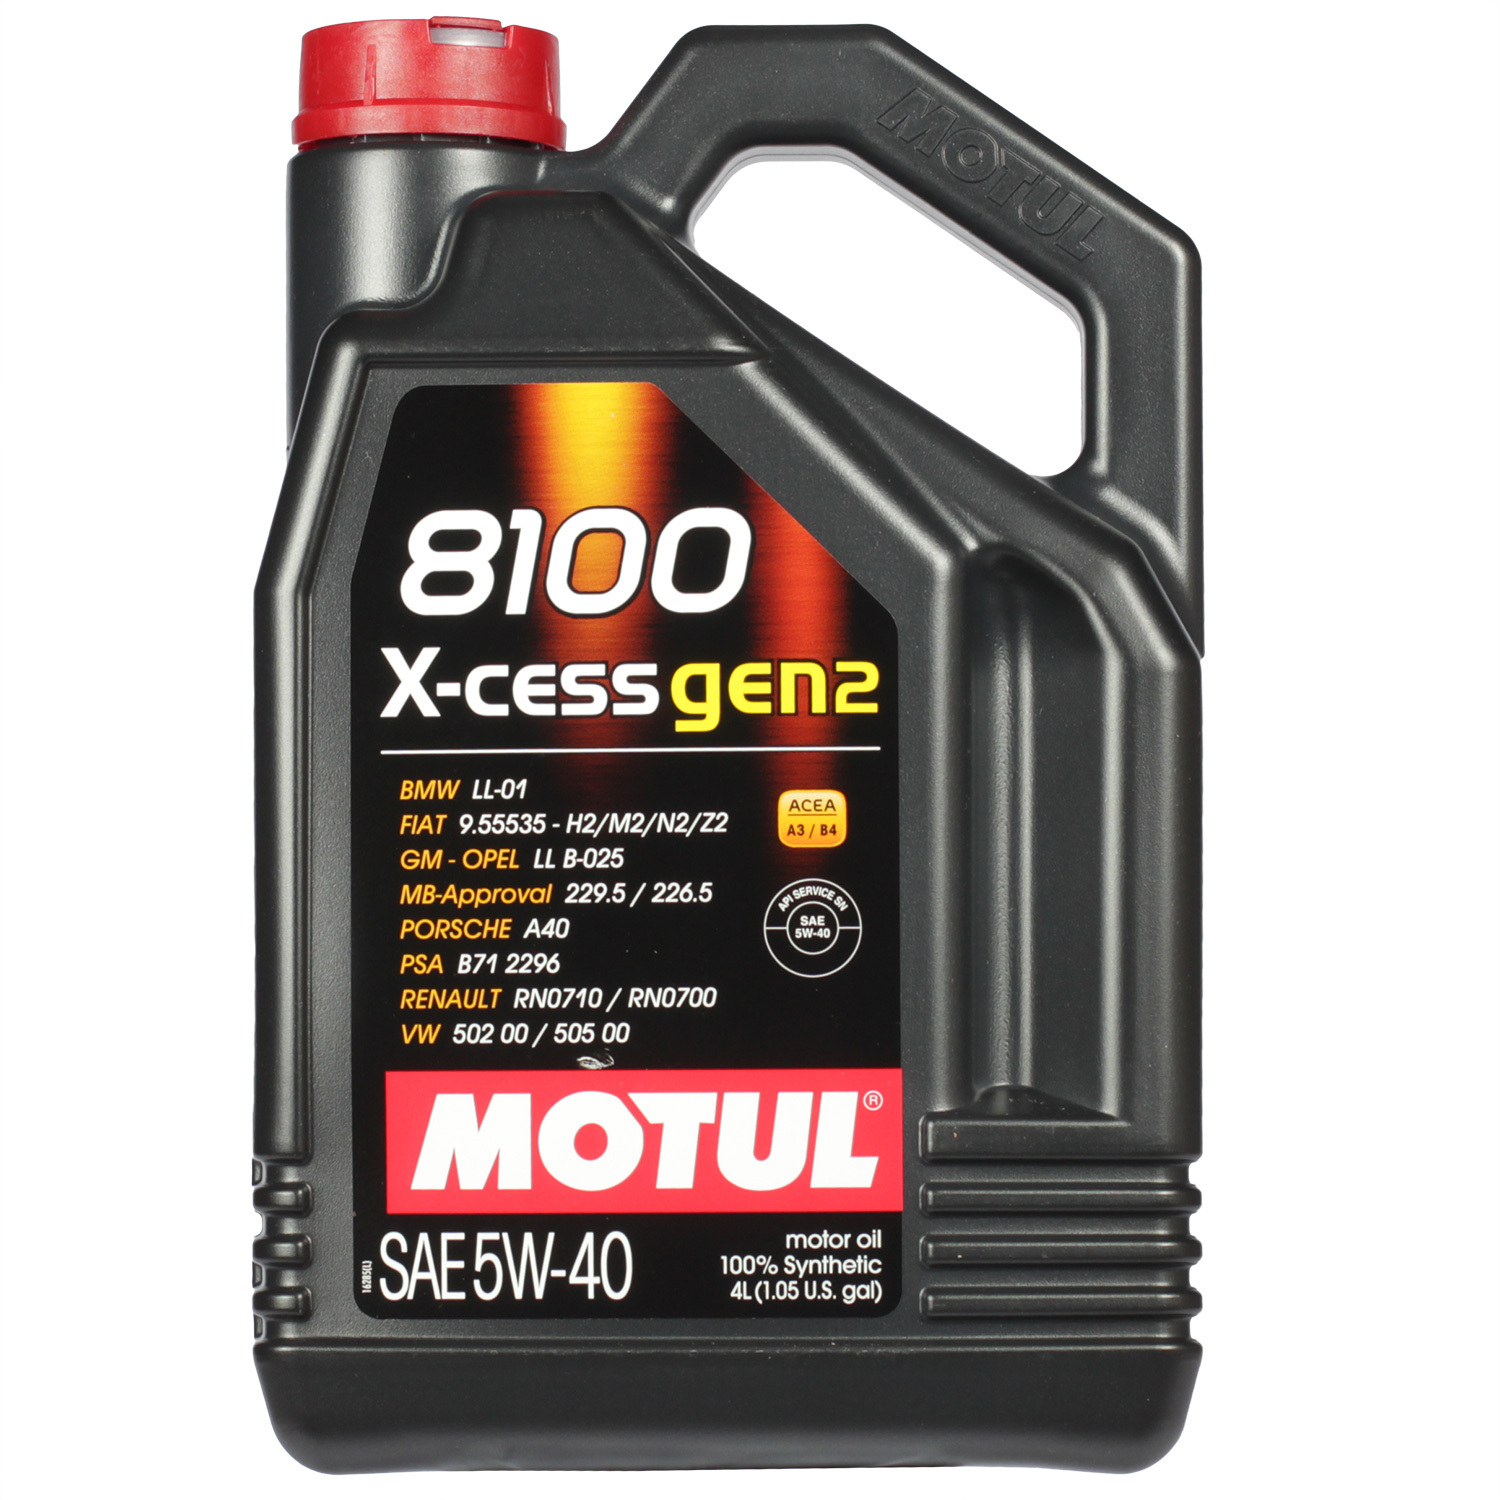 Motul Моторное масло Motul 8100 X-cess gen2 5W-40, 4 л масло моторное motul 300v competition 5w 40 синтетическое 2 л